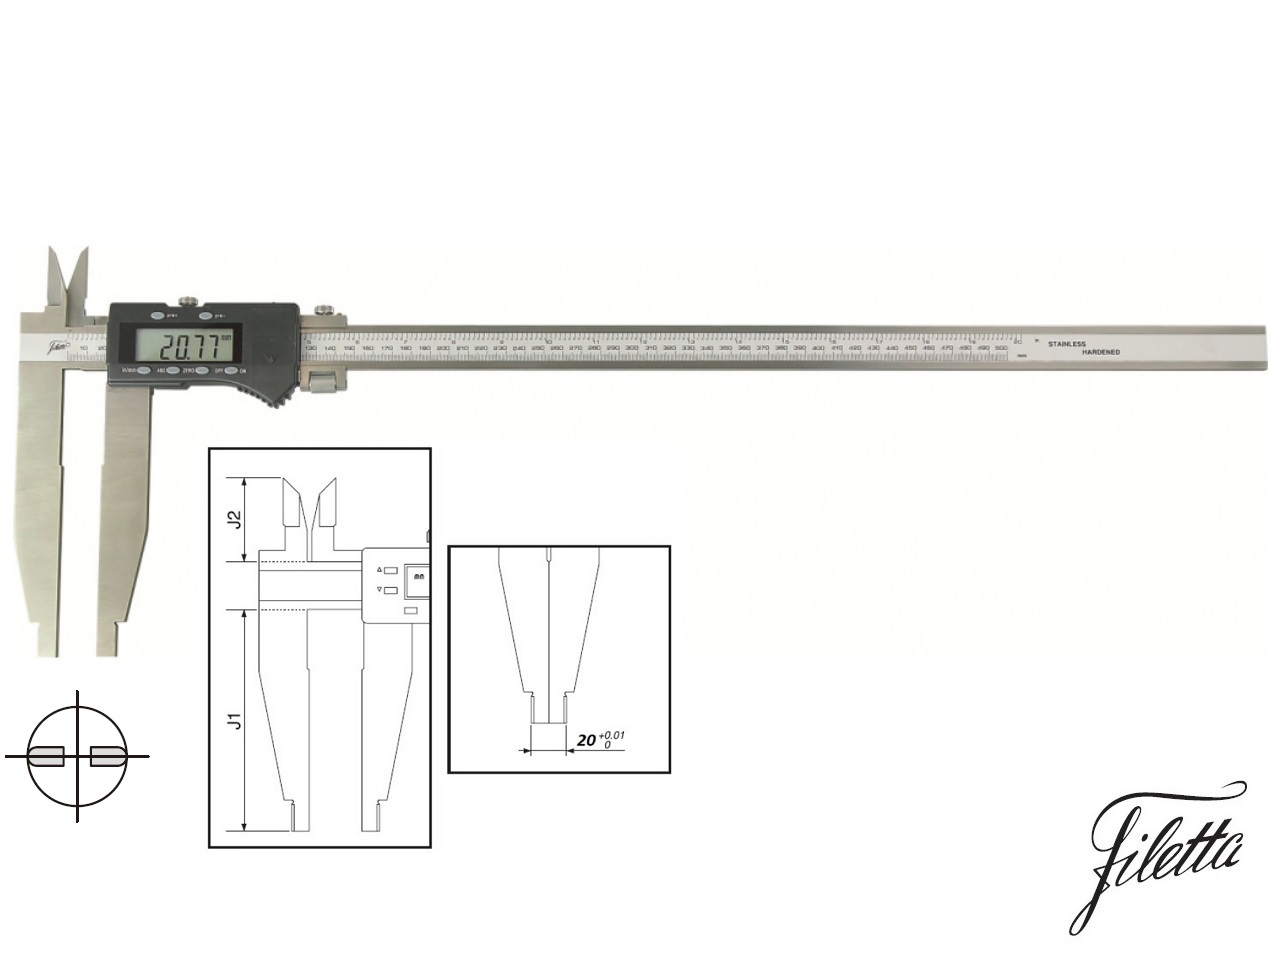 Digitální posuvné měřítko Filetta 0-300/75 mm s měřicími nožíky pro vnitřní měření